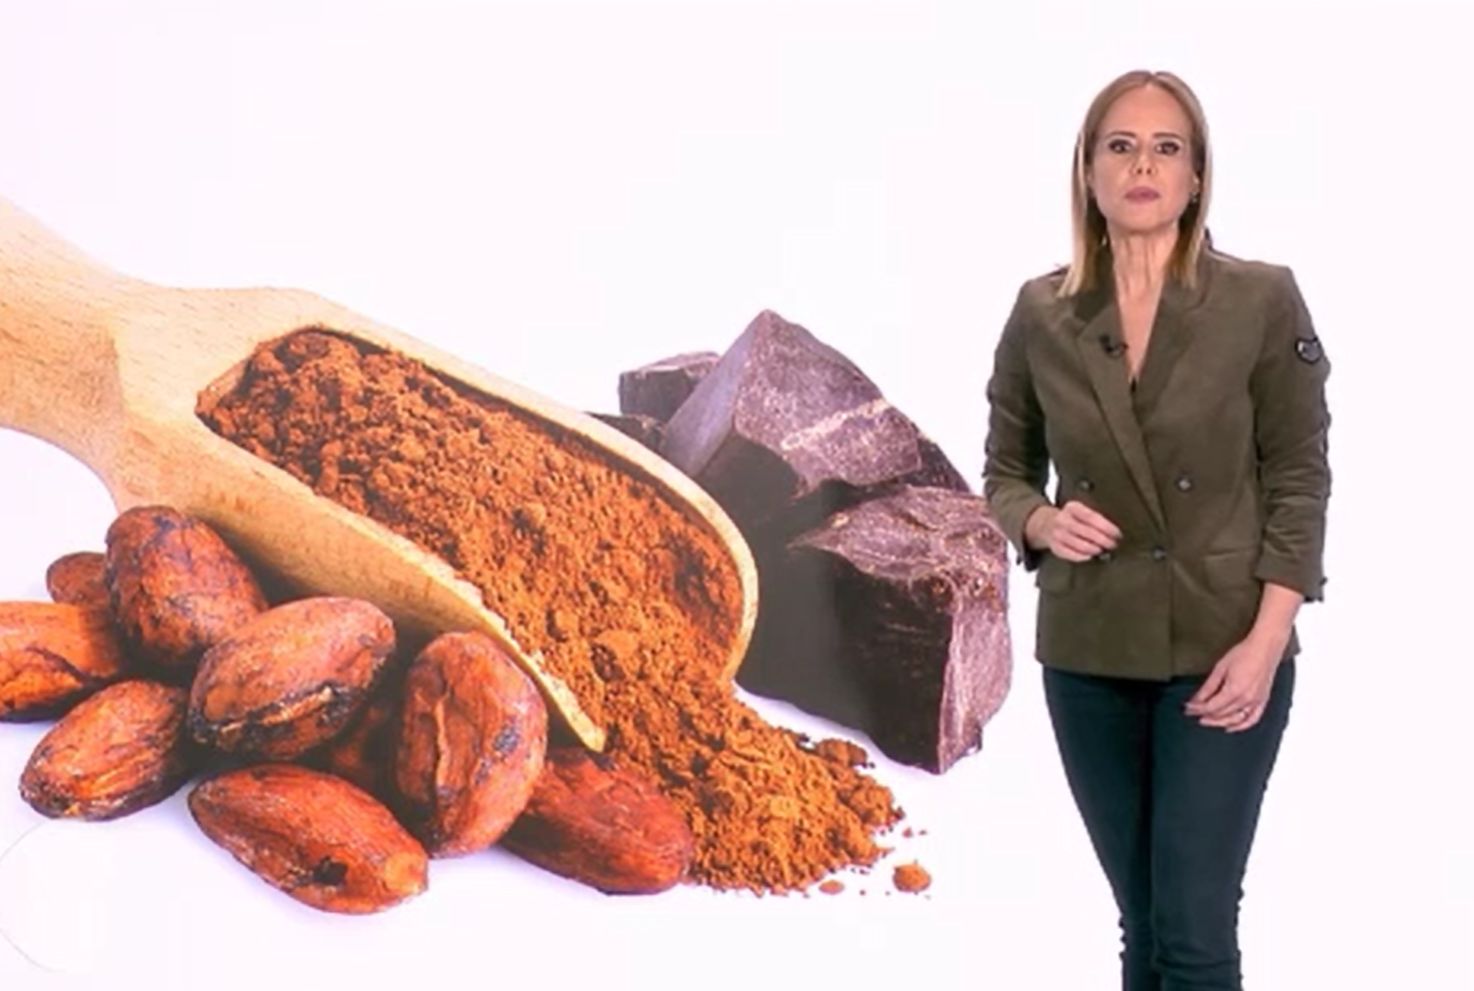 Ciocolata caldă, deliciul sănătos permis de medicul nutriționist. Avantajele, explicate de dr. Mihaela Bilic